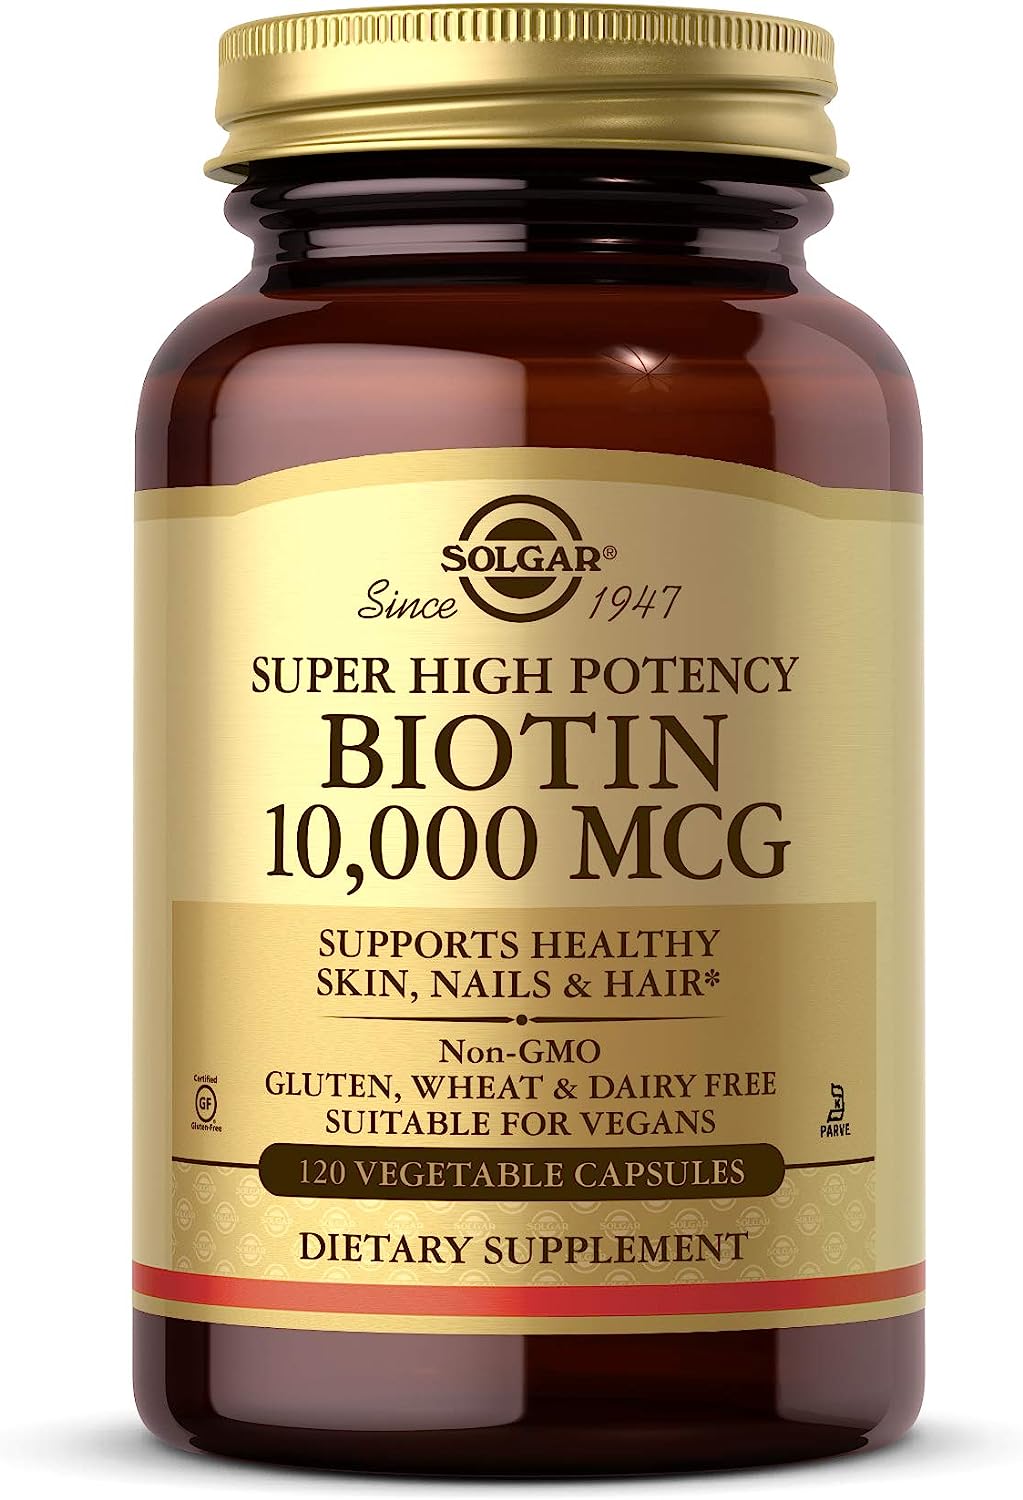 Solgar Biotin 10,000 mcg 120 Capsulas - The Red Vitamin MX - Suplementos Alimenticios - SOLGAR